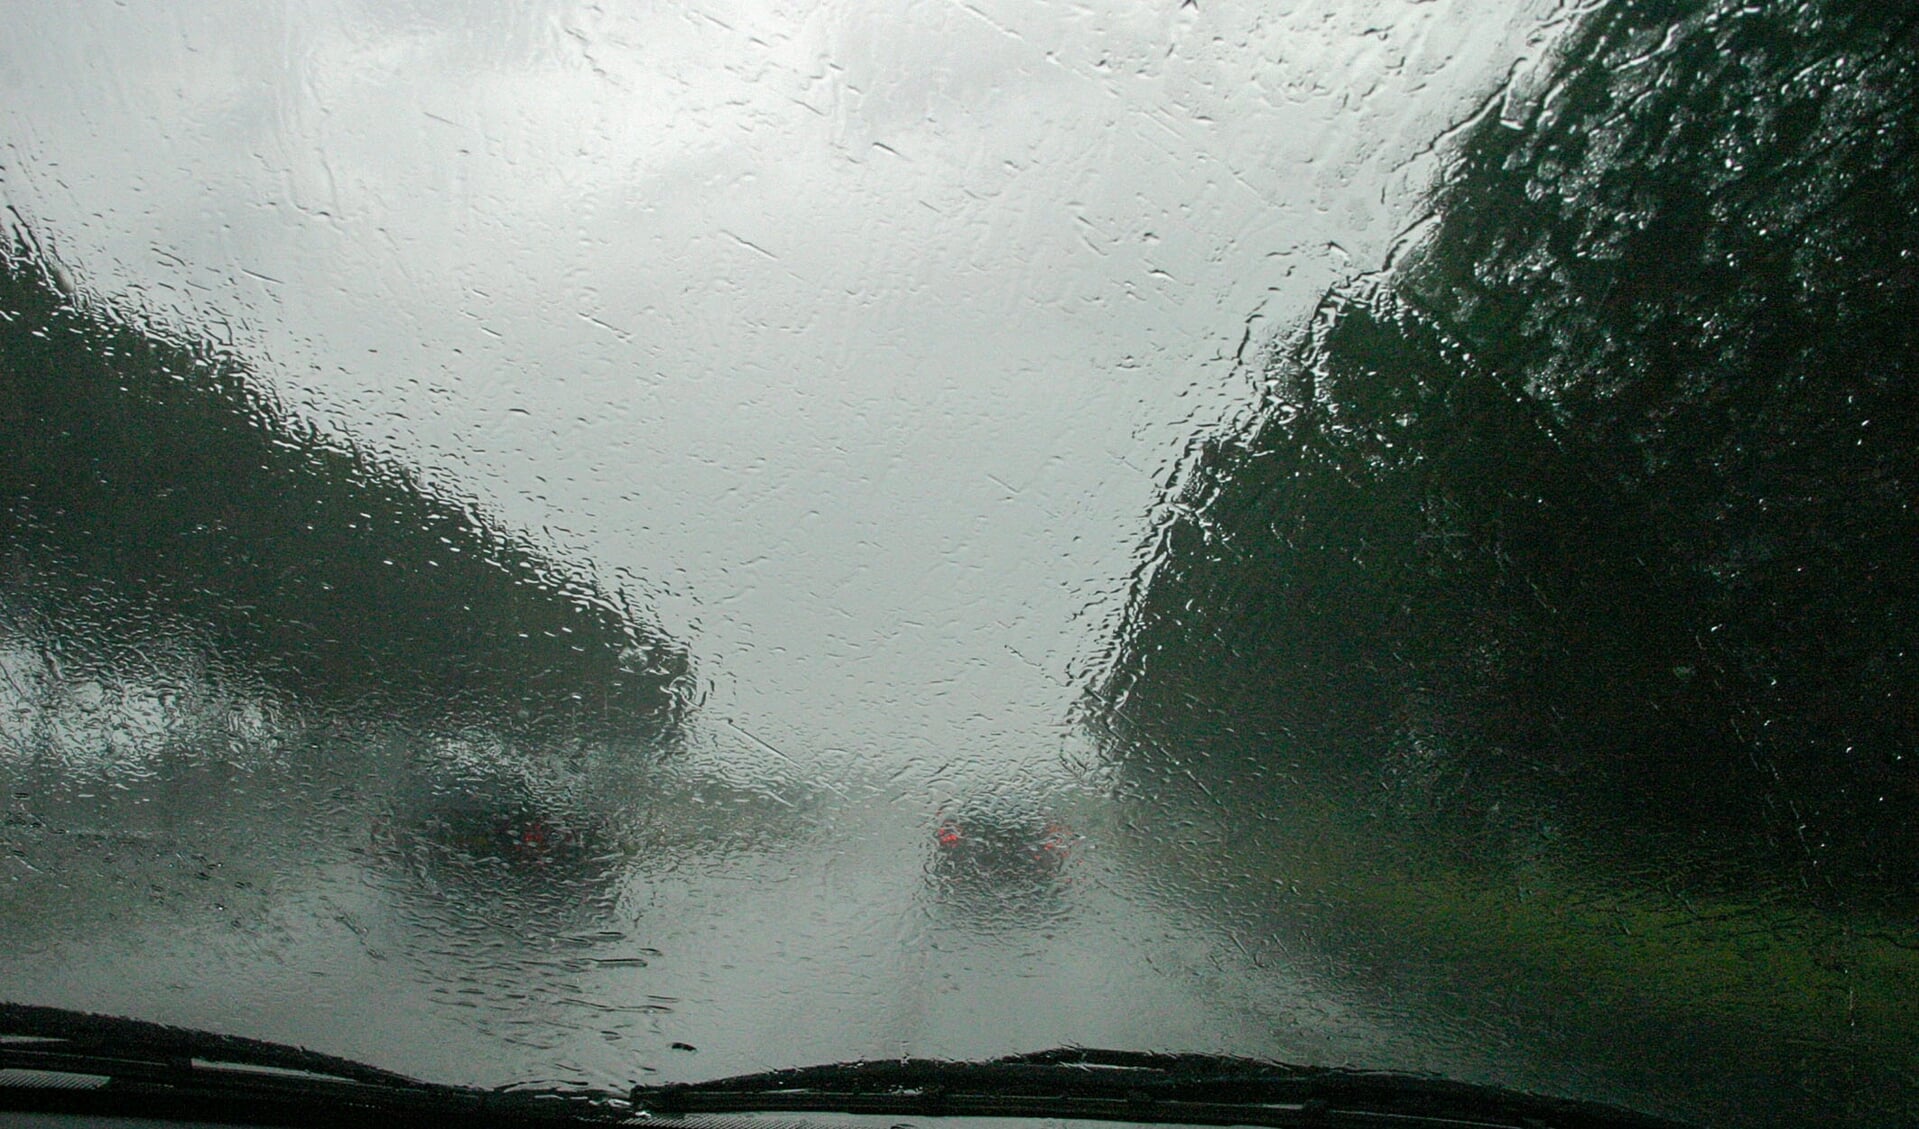 • Een creatief voorbeeld: in de auto tijdens een hevige regenbui tussen het ruitenwissen door.